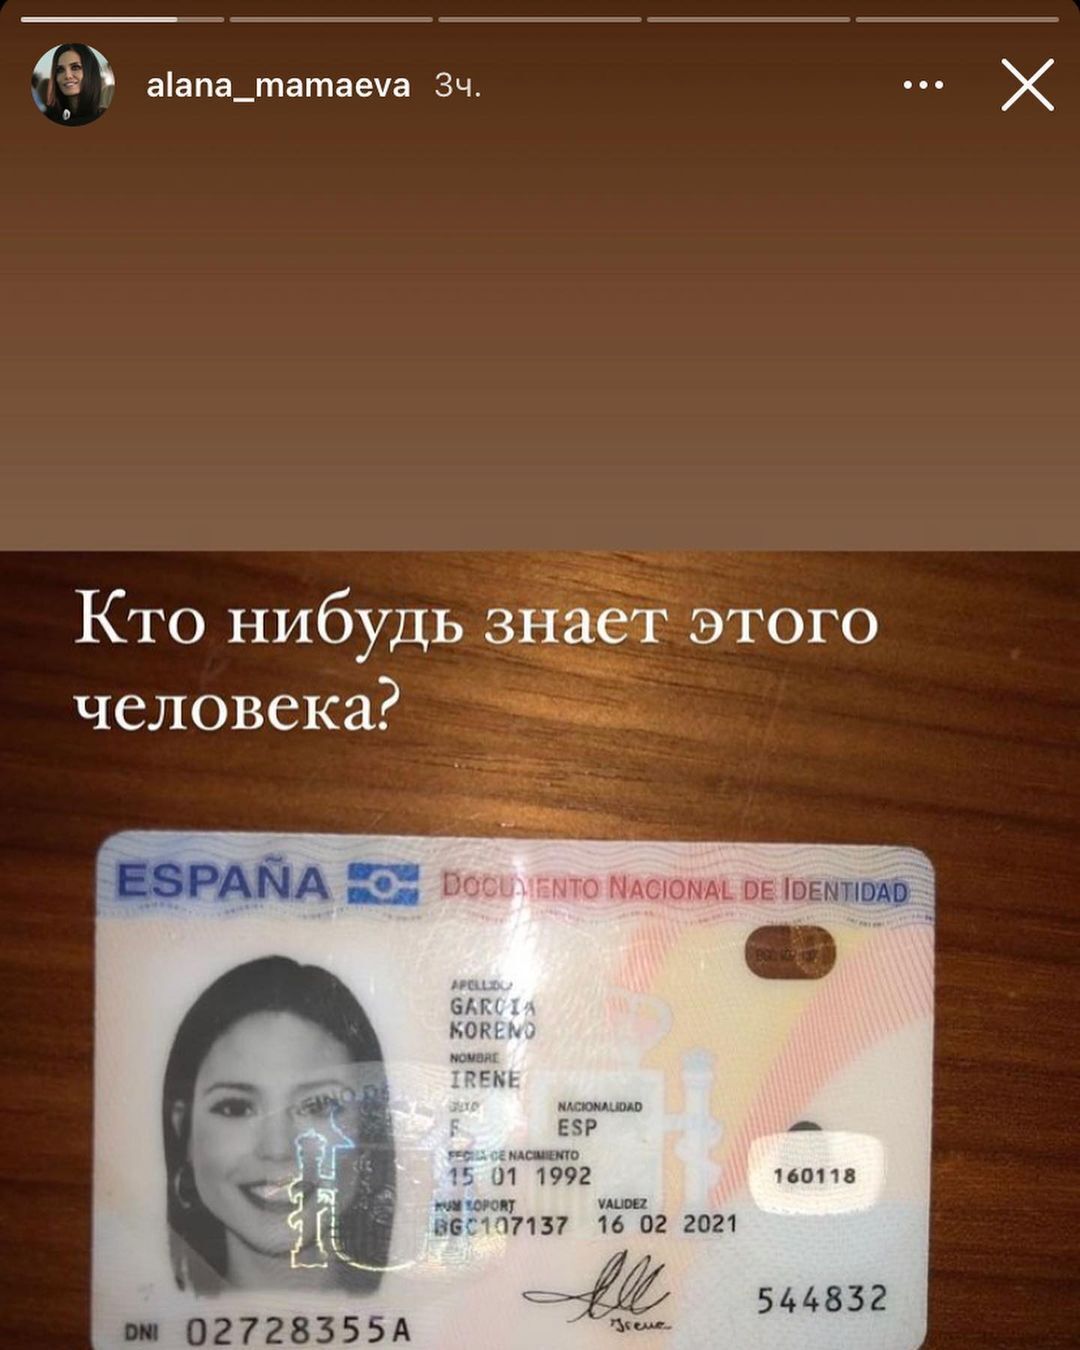 Паспорт Ирен Гарсия Корено